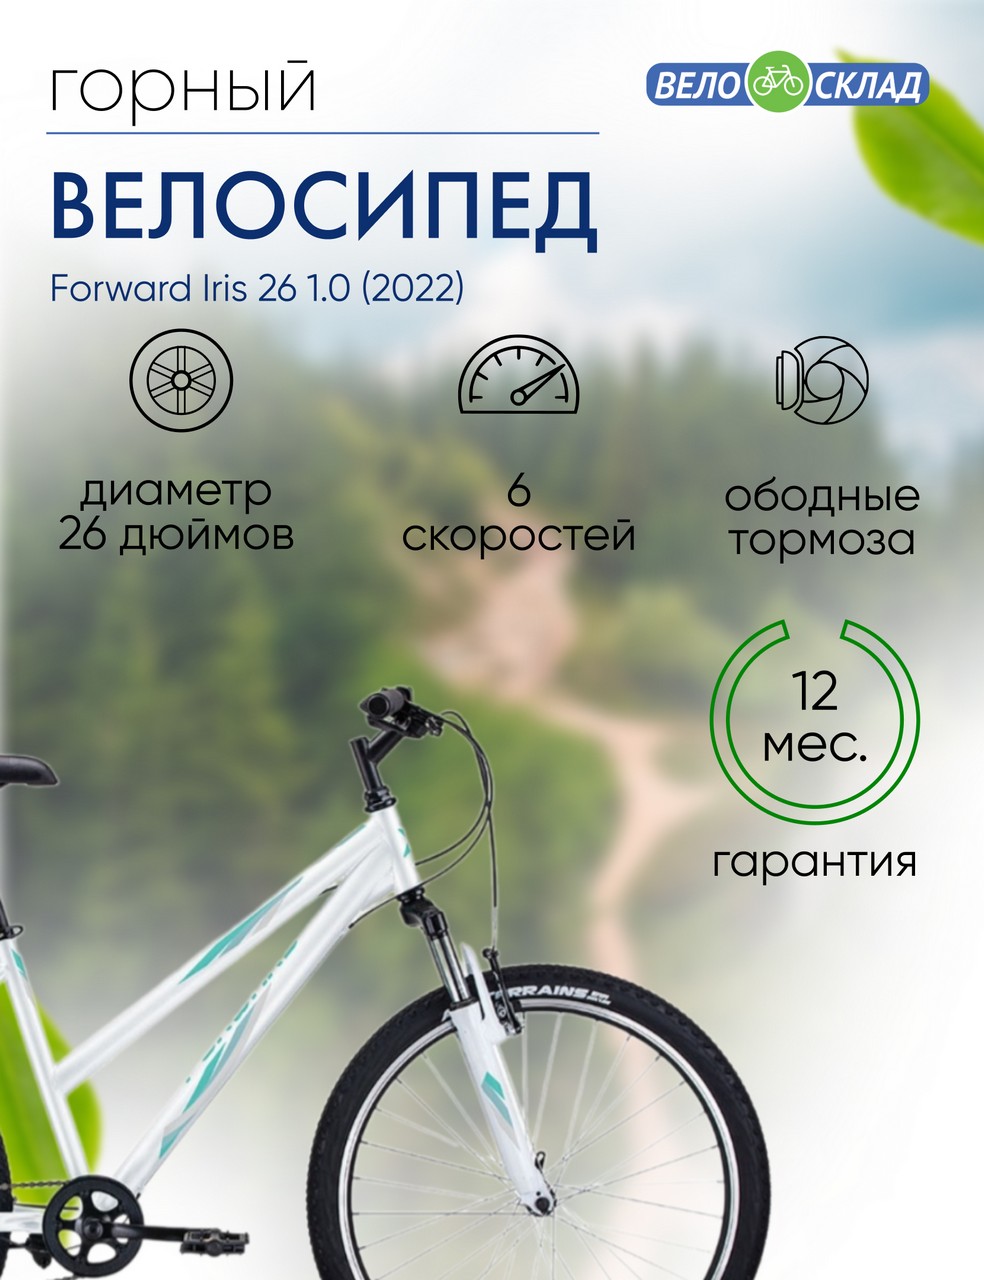 Женский велосипед Forward Iris 26 1.0, год 2022, цвет Белый-Зеленый, ростовка 17